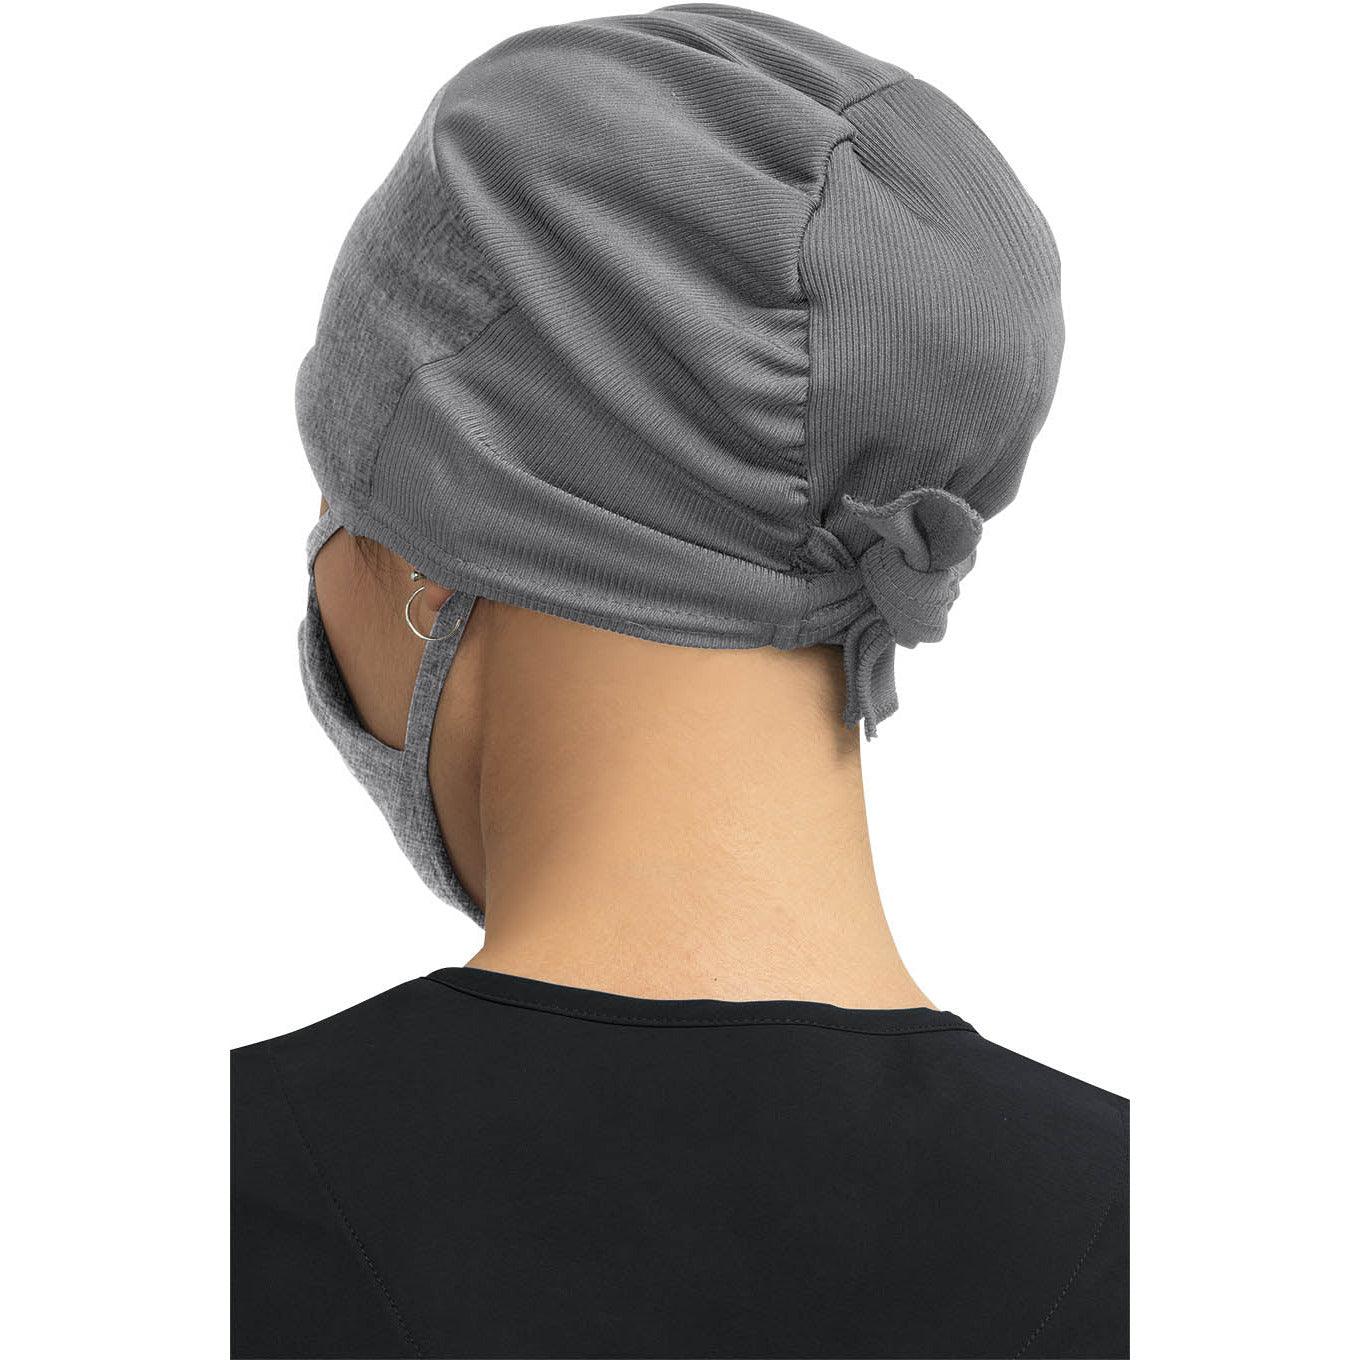 Koi - Unisex Surgical Hat Scrub Cap Koi   